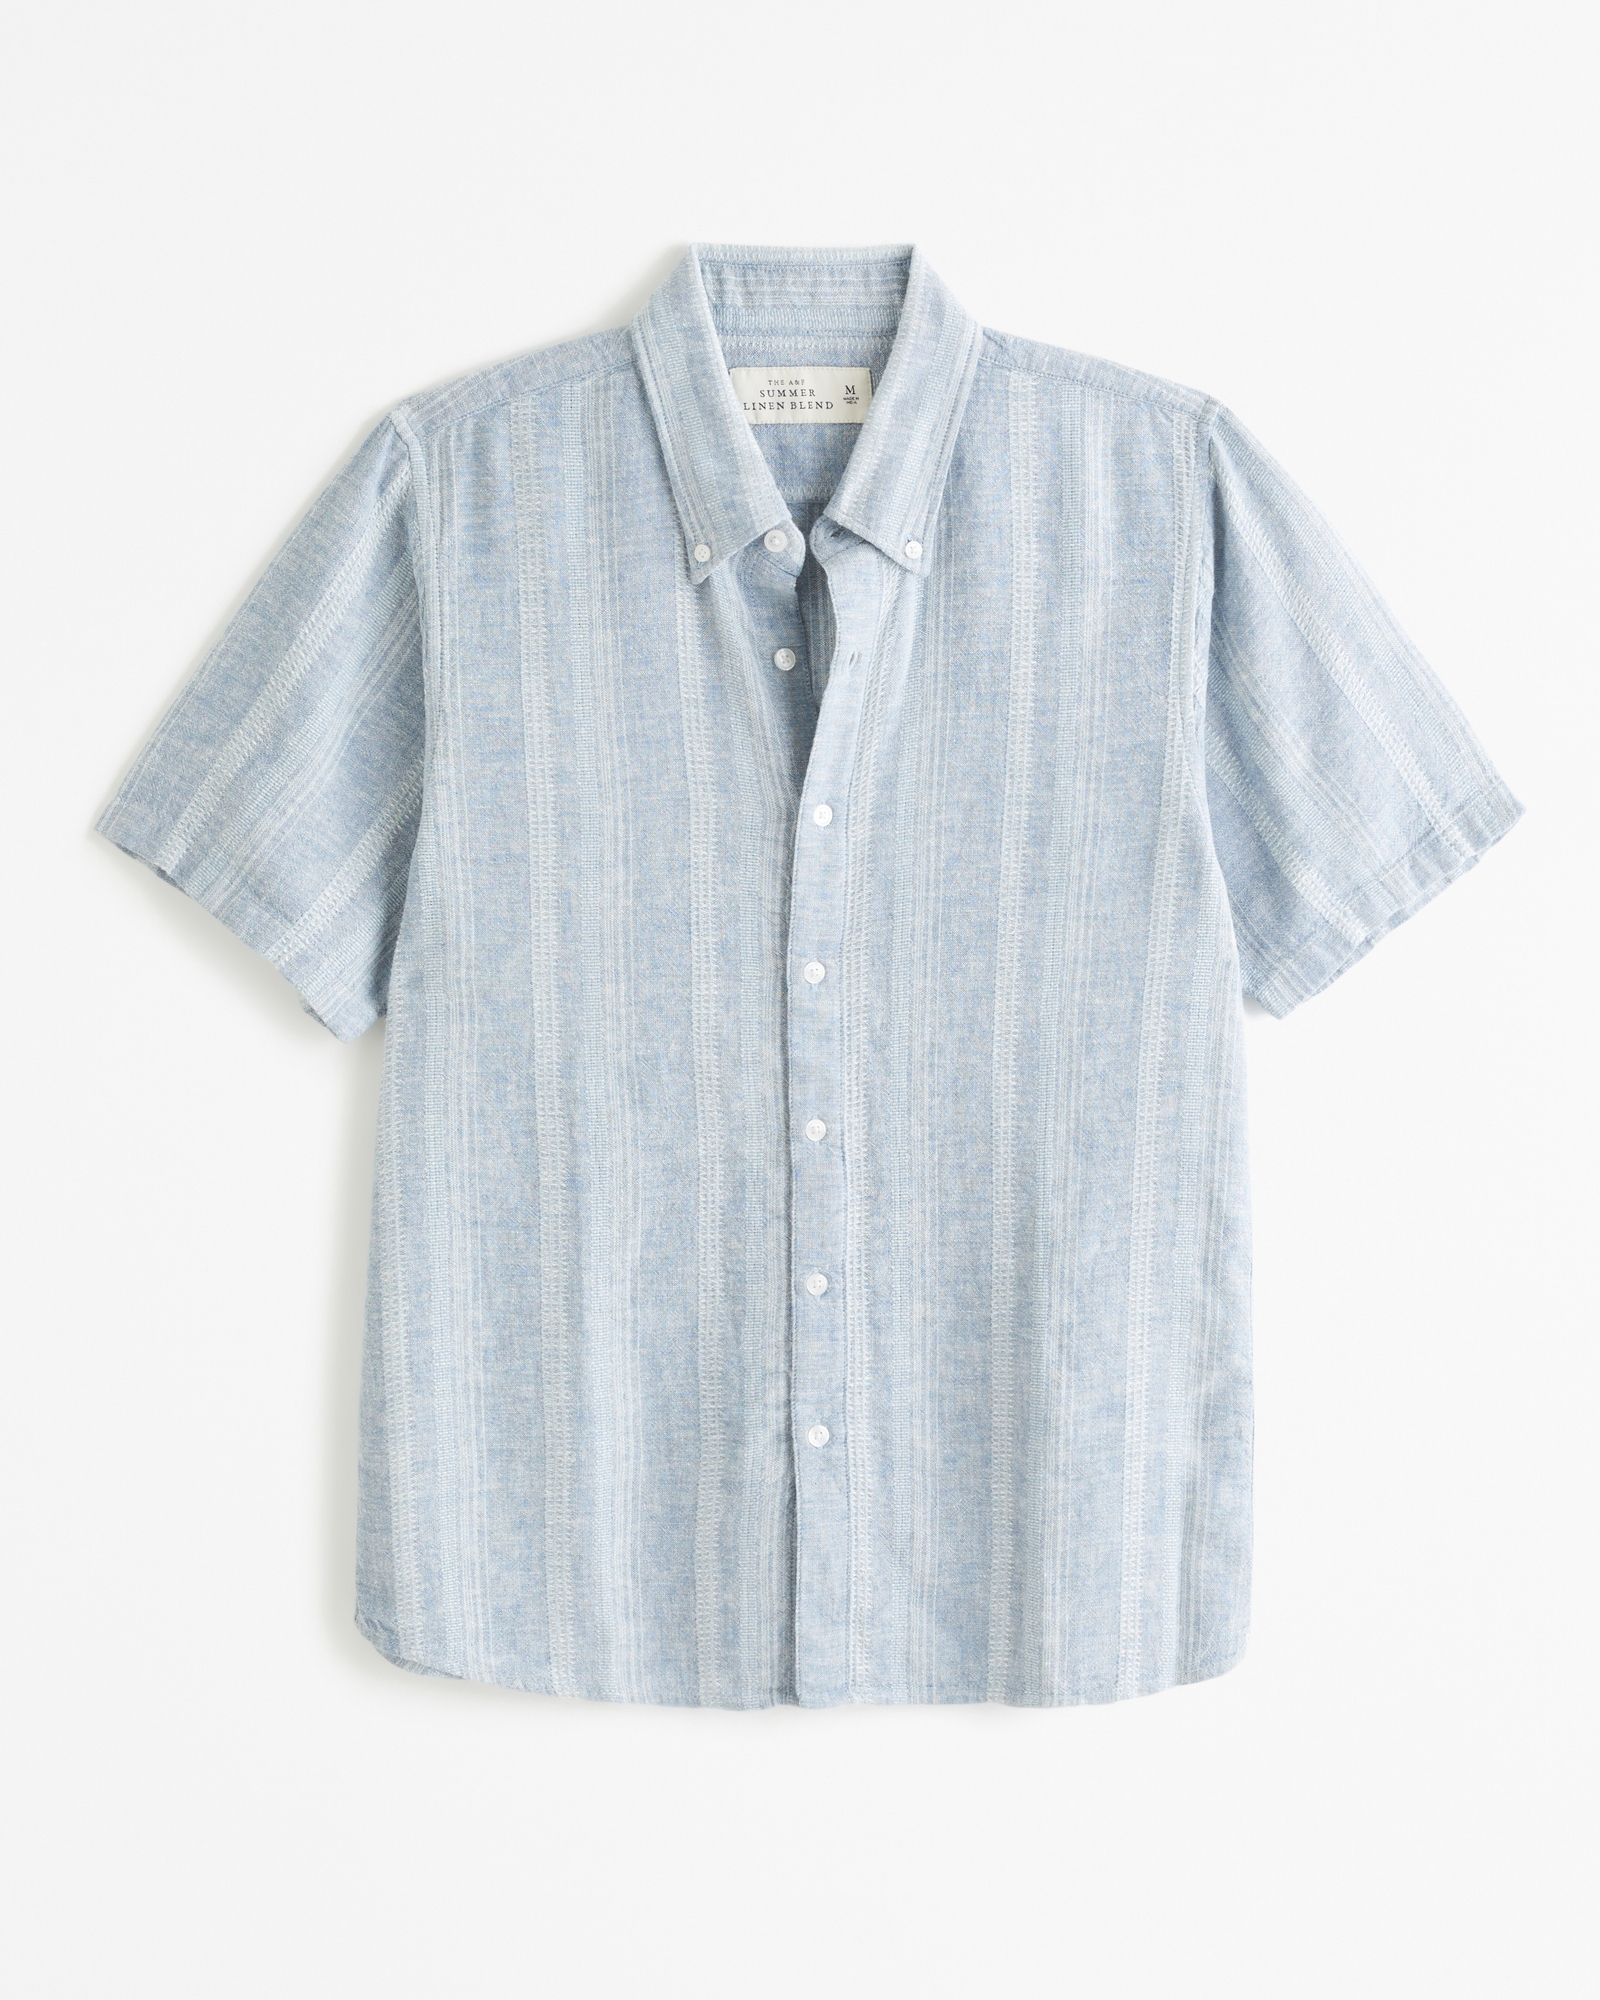 Linen Blend Volume Short Sleeve Shirt